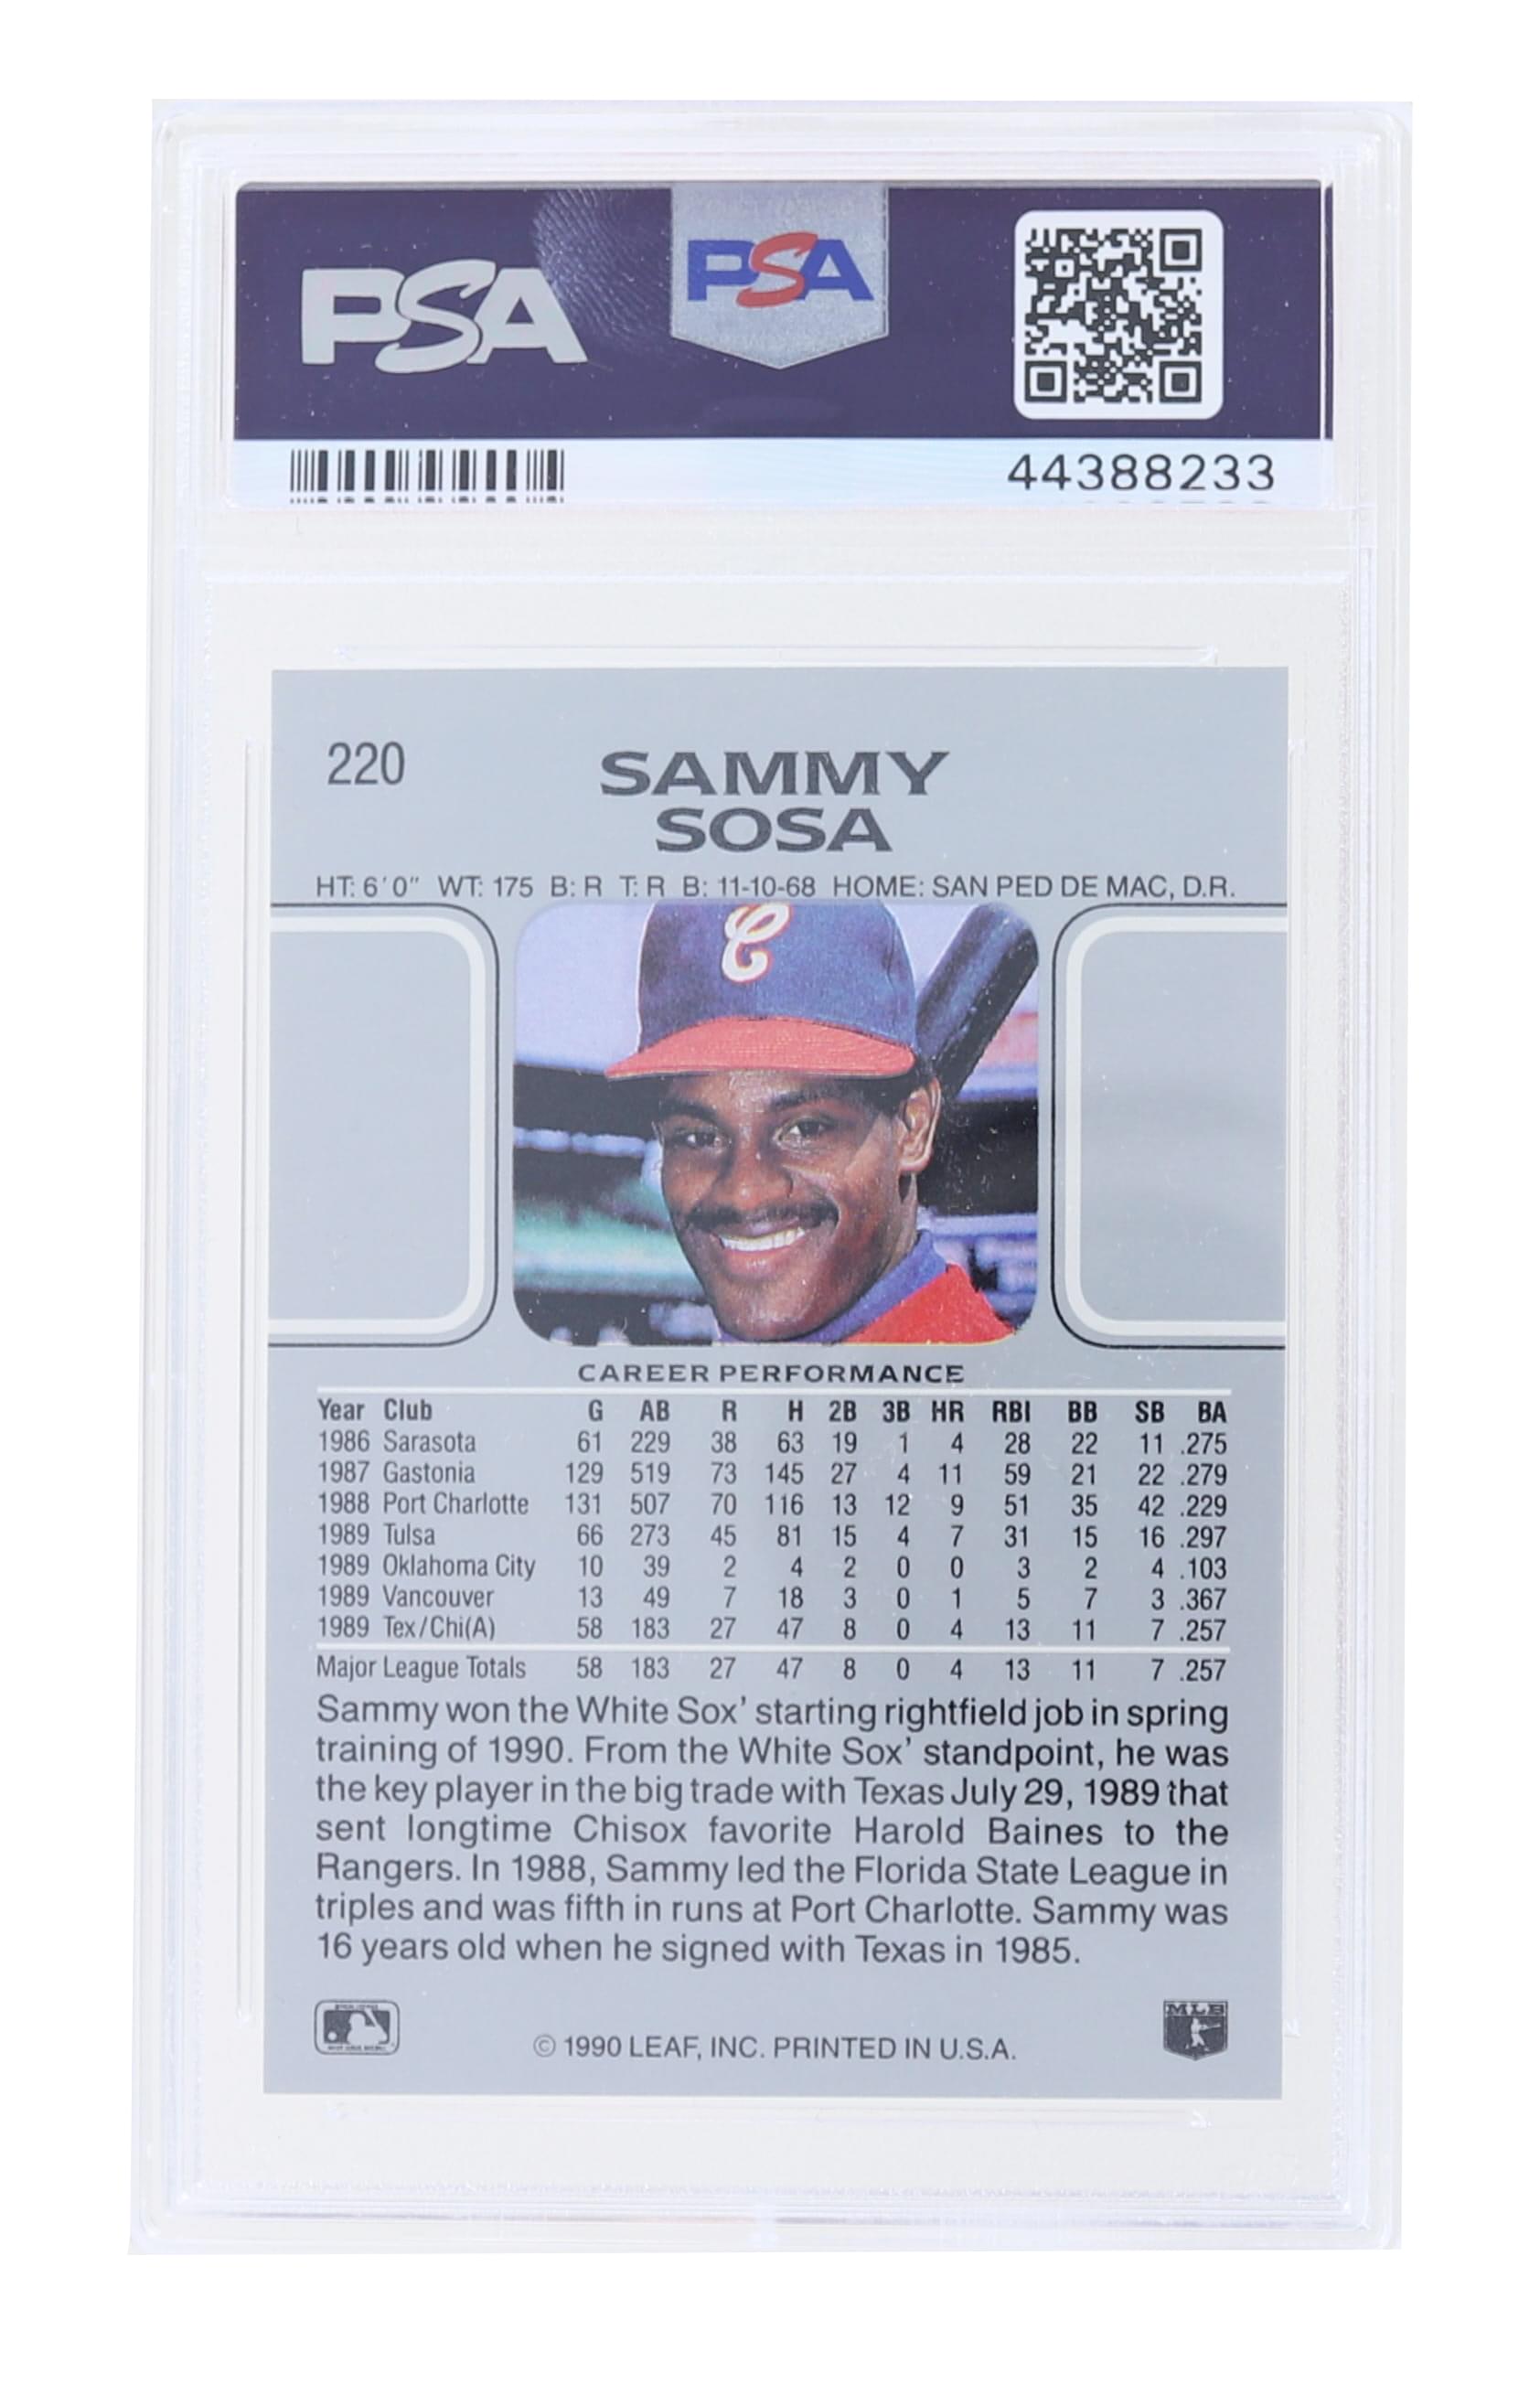 MLB 1990 Leaf #220 Sammy Sosa RC PSA 10